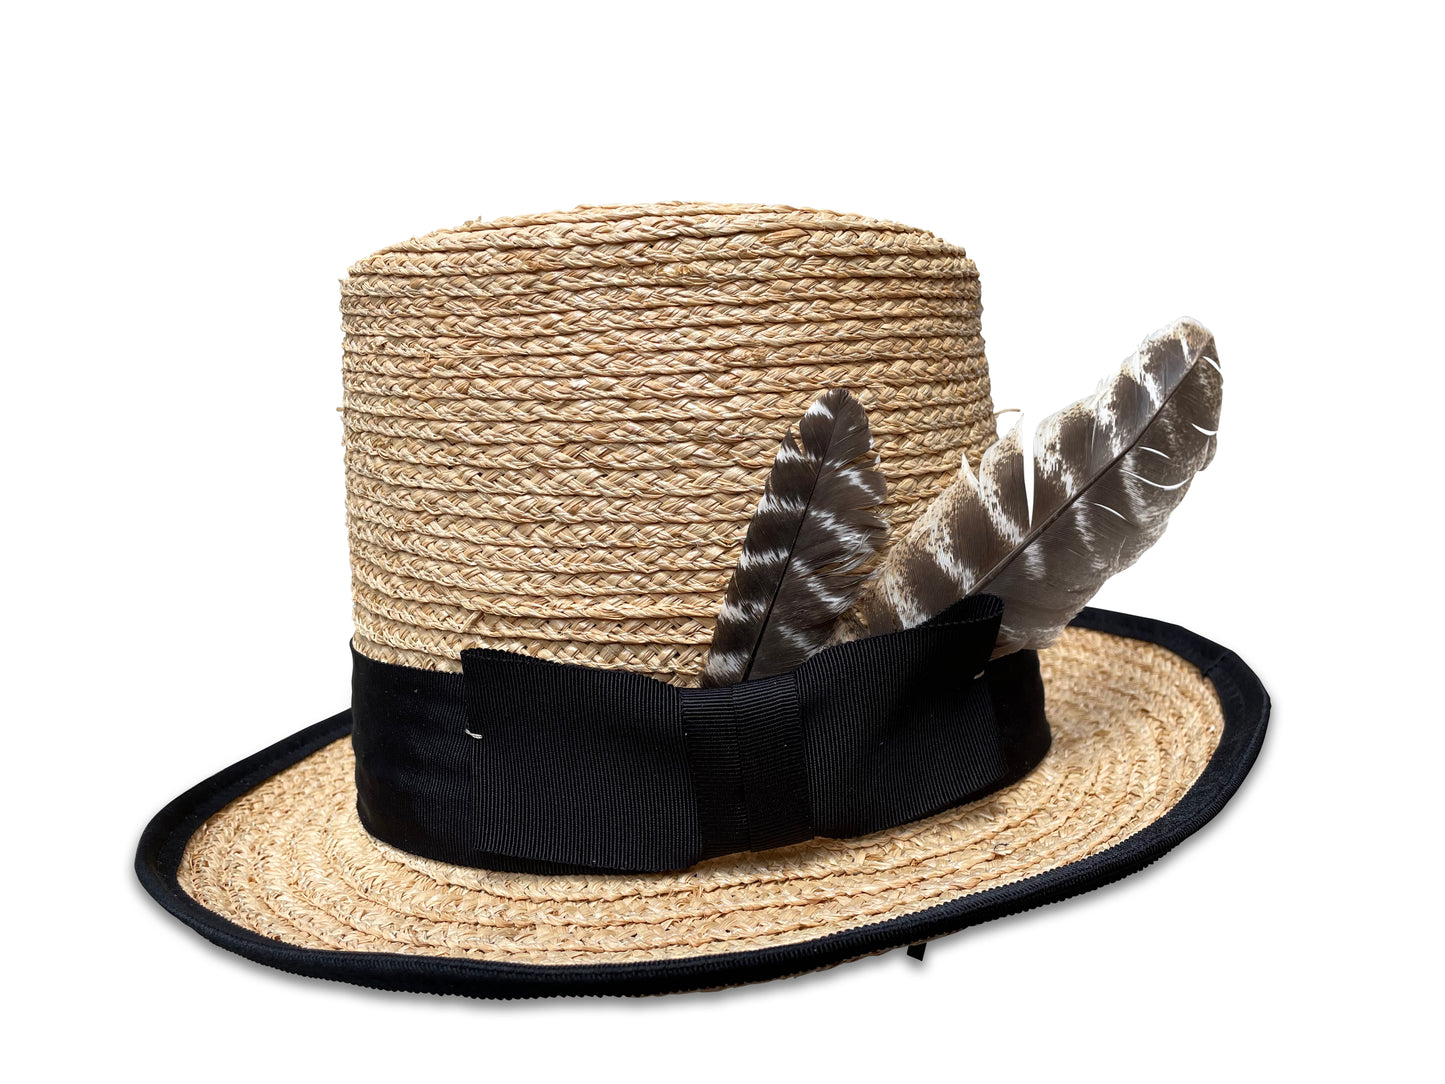 Amelia - Raffia Braid Top Hat